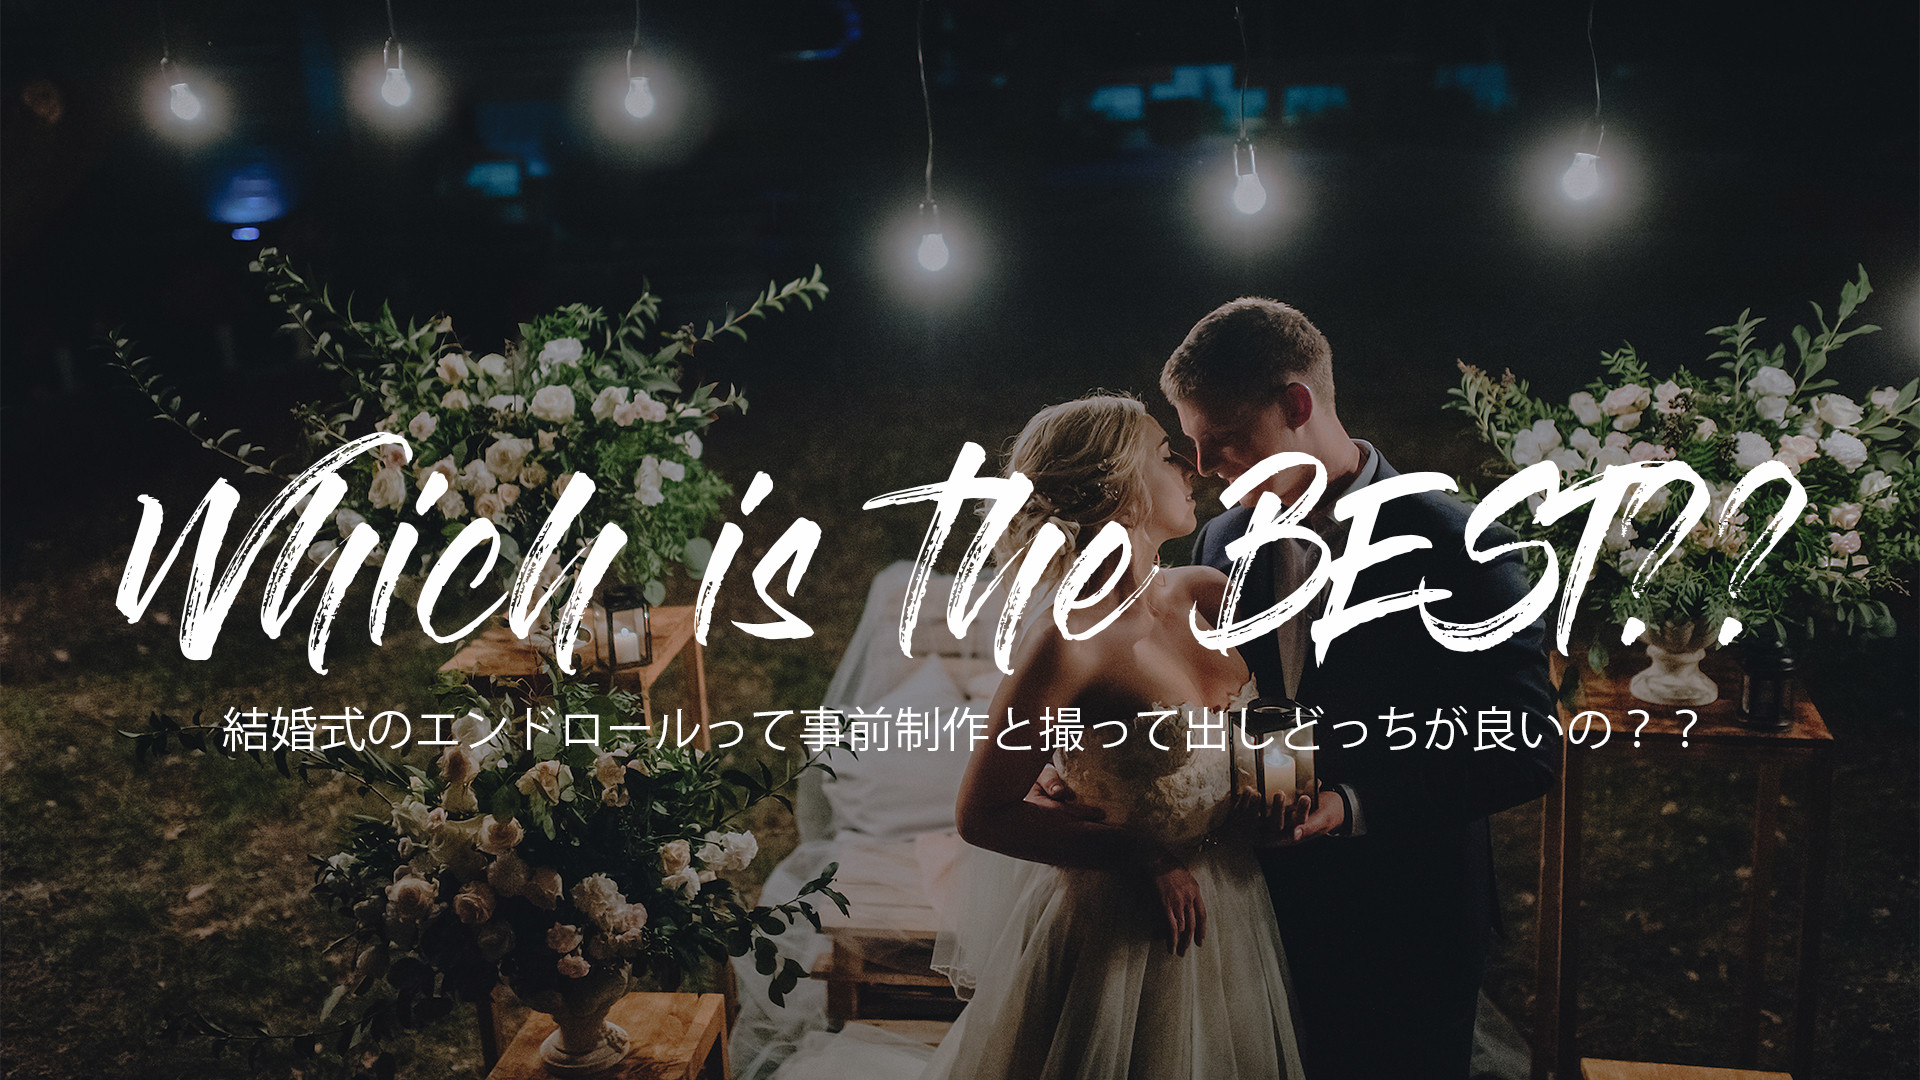 結婚式エンドロール 写真 Or 撮って出し 東京都内エンドロール制作のプロが教える節約術と手作りのコツ Studio Sugar 東京都内での結婚式映像制作